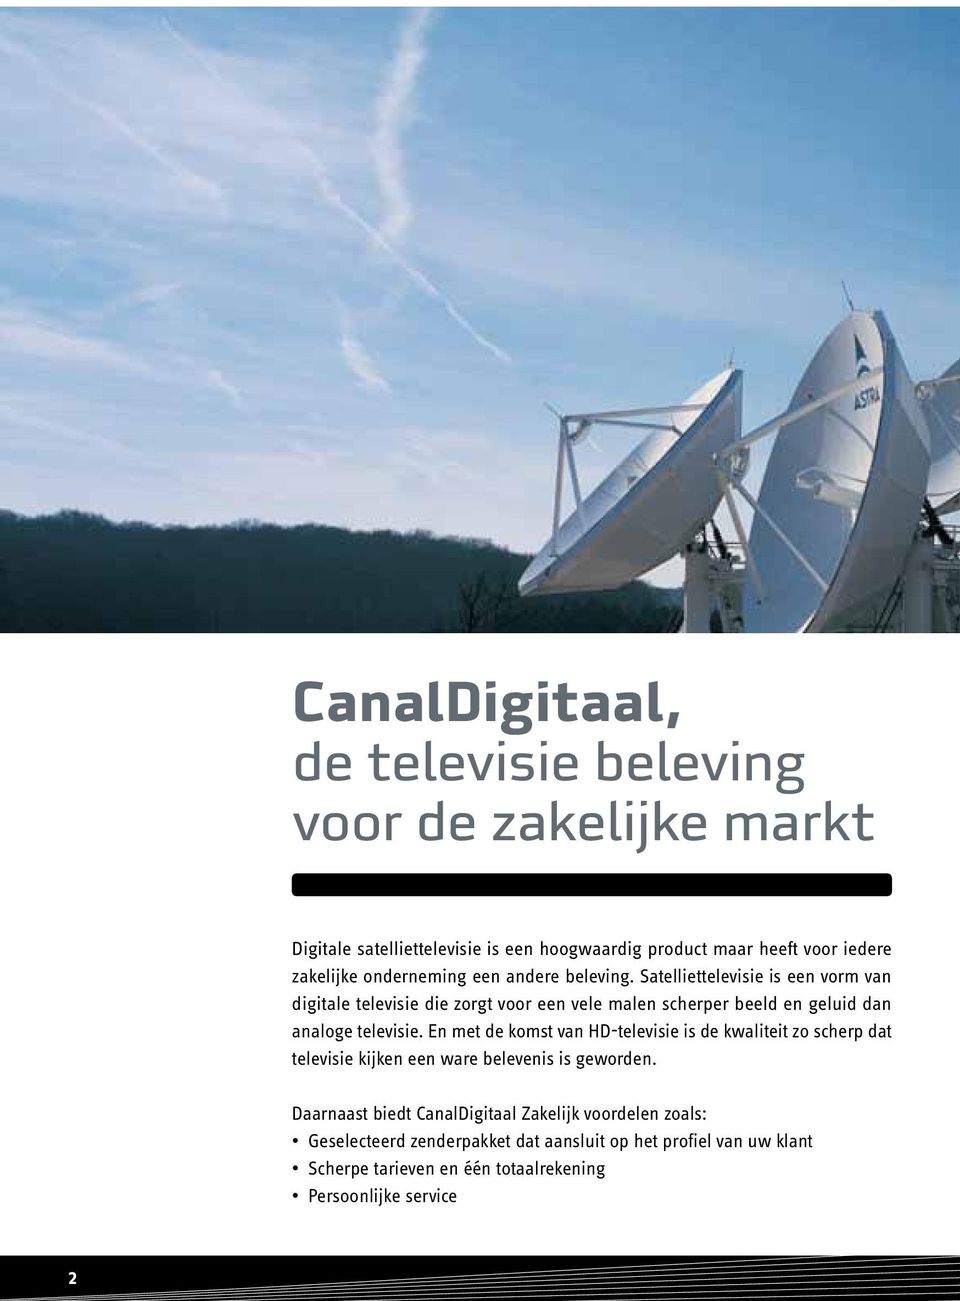 Satelliettelevisie is een vorm van digitale televisie die zorgt voor een vele malen scherper beeld en geluid dan analoge televisie.